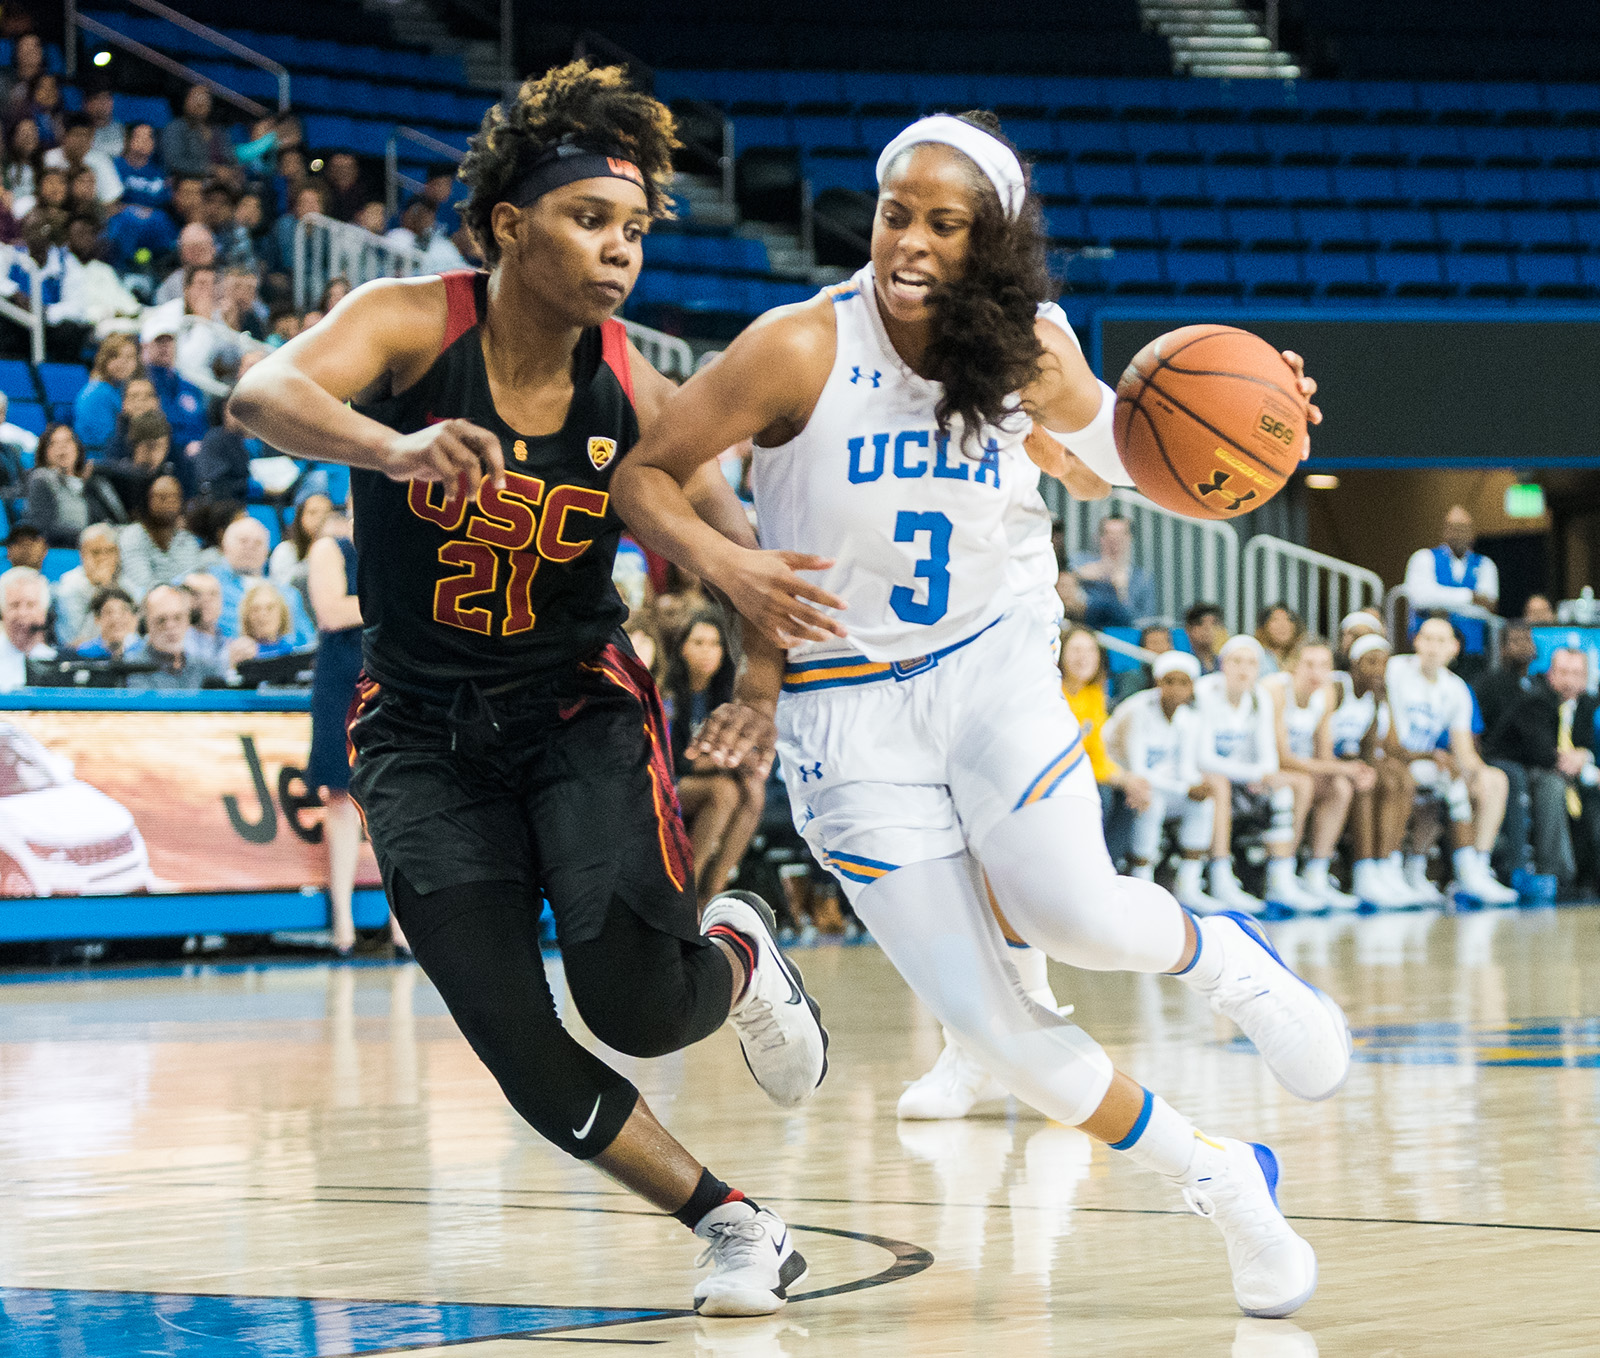 UCLA women’s basketball holds USC to season’s lowest score in 5946